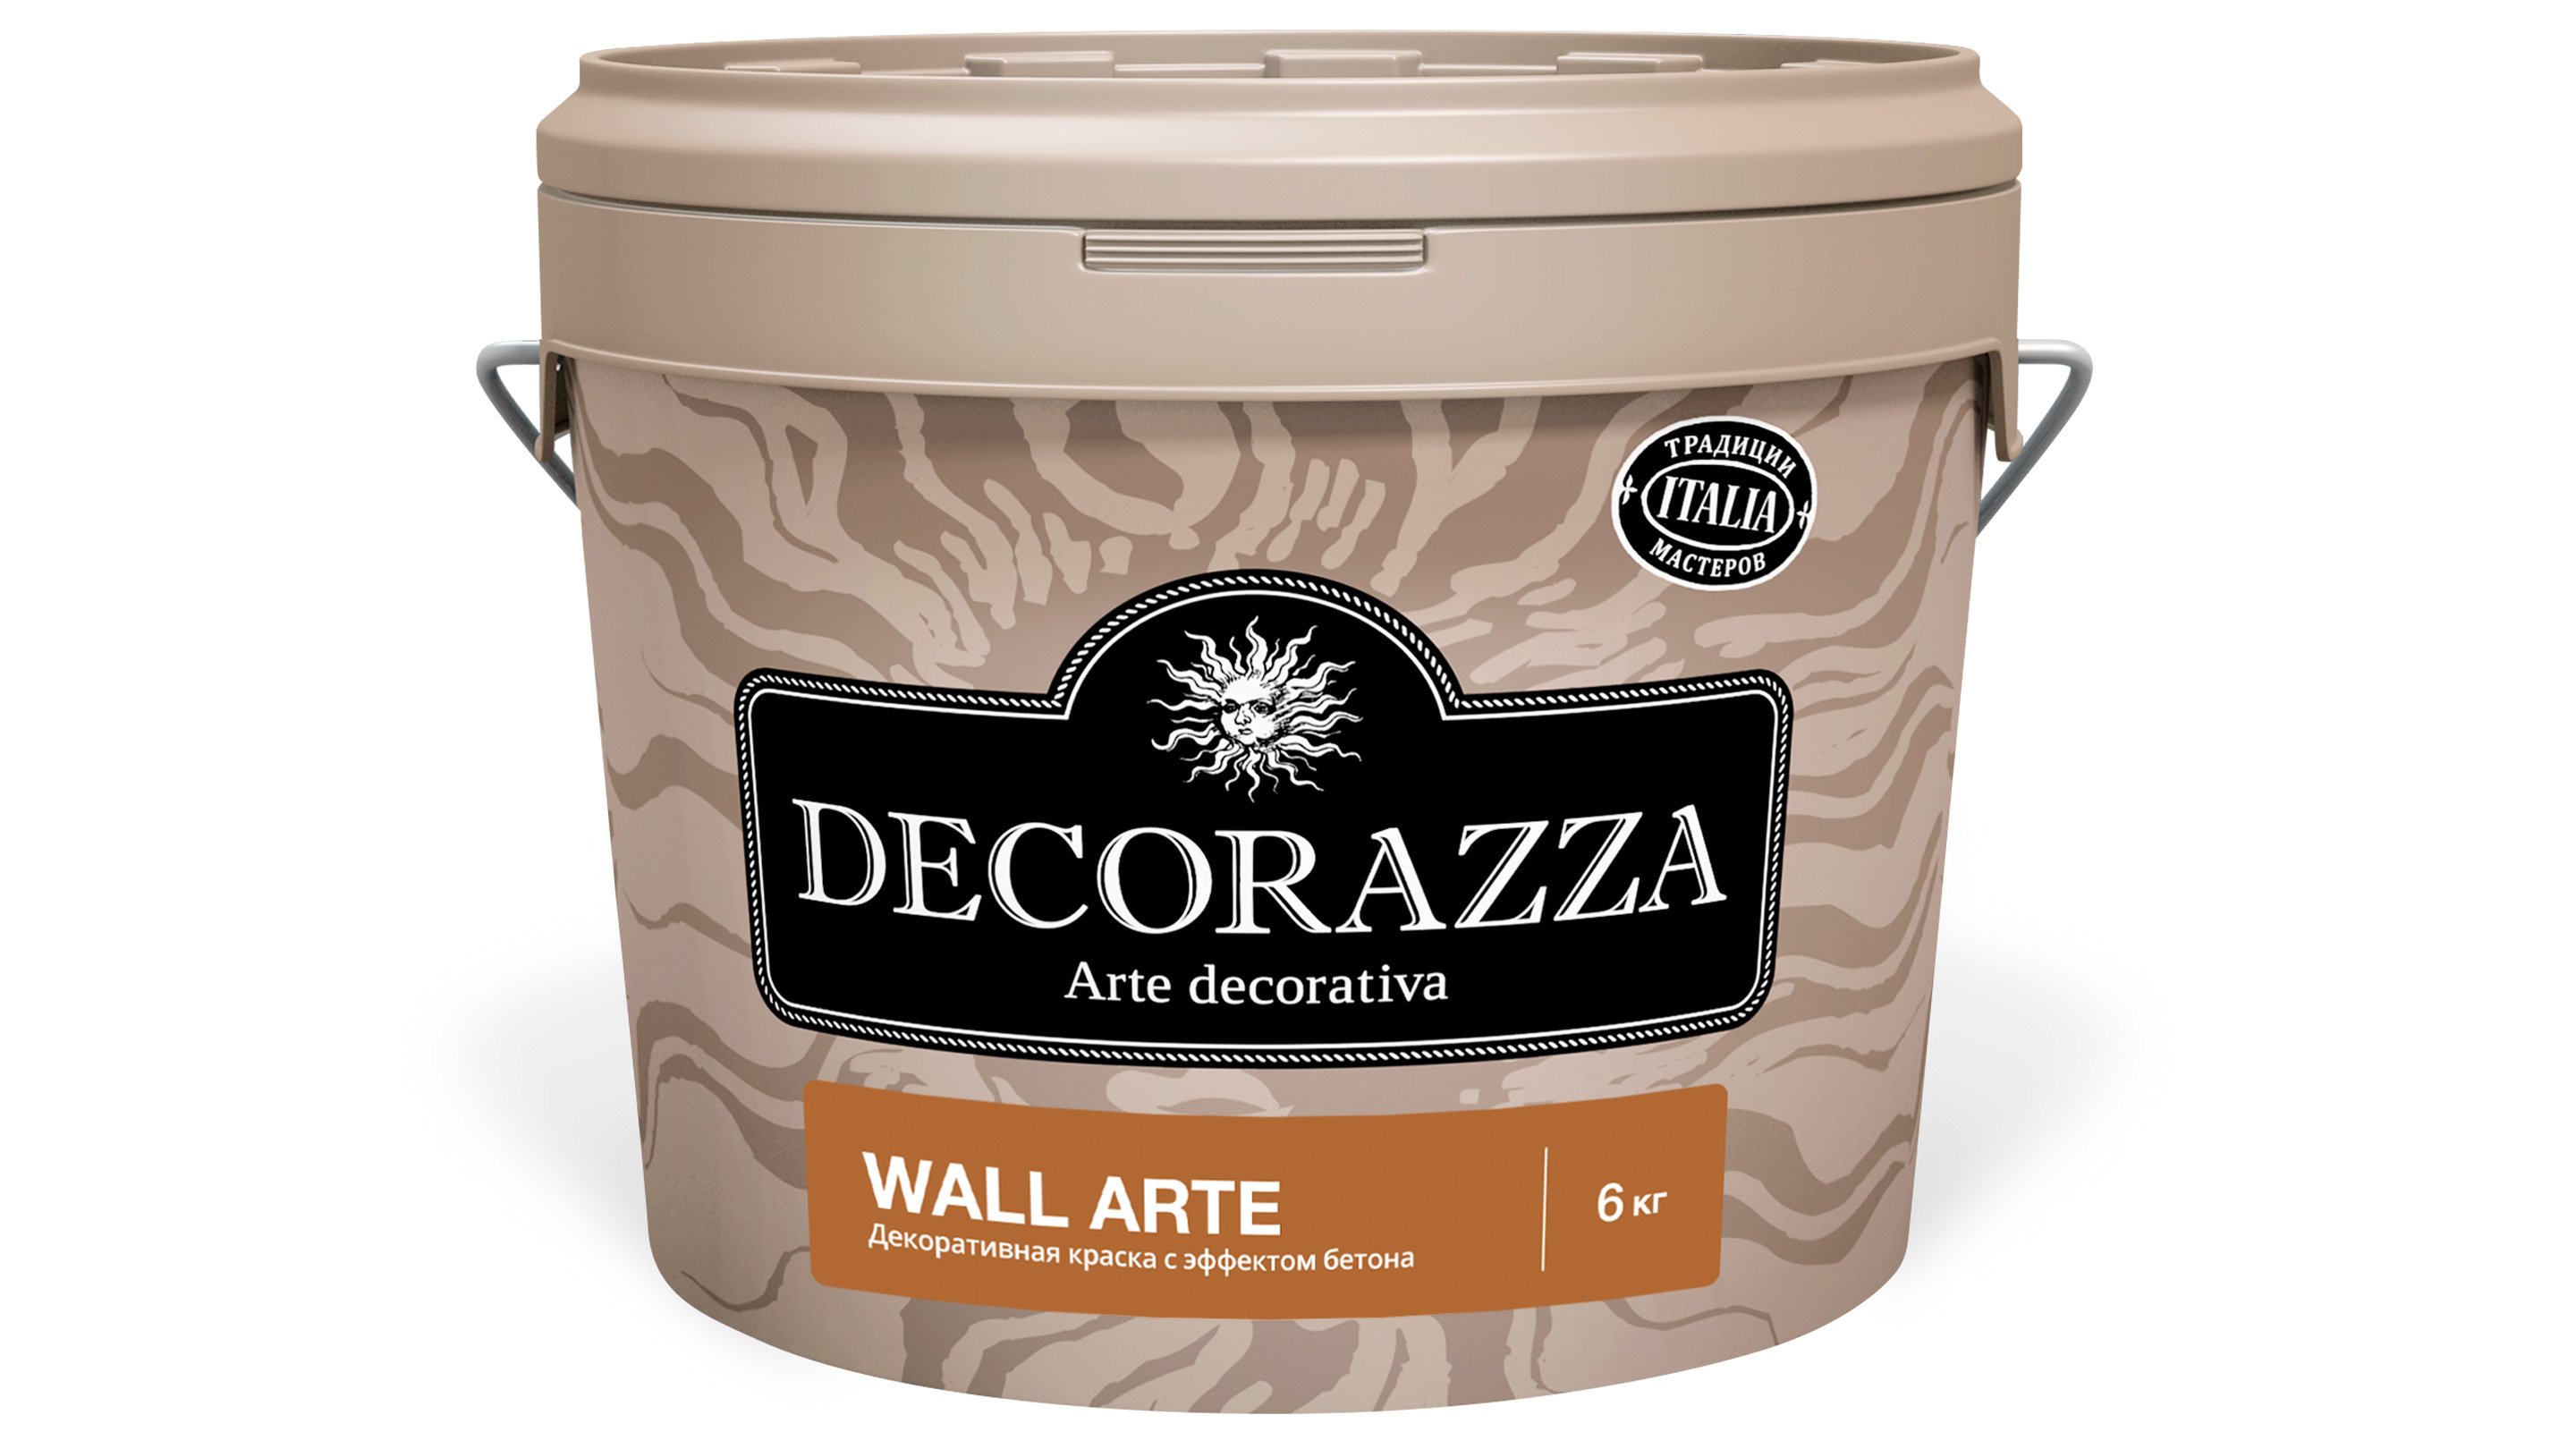 Декоративная штукатурка Decorazza Wall Arte (с эффектом гладкого бетона) 6 кг краска декоративная decorazza alcantara 1 л 0 7 кг